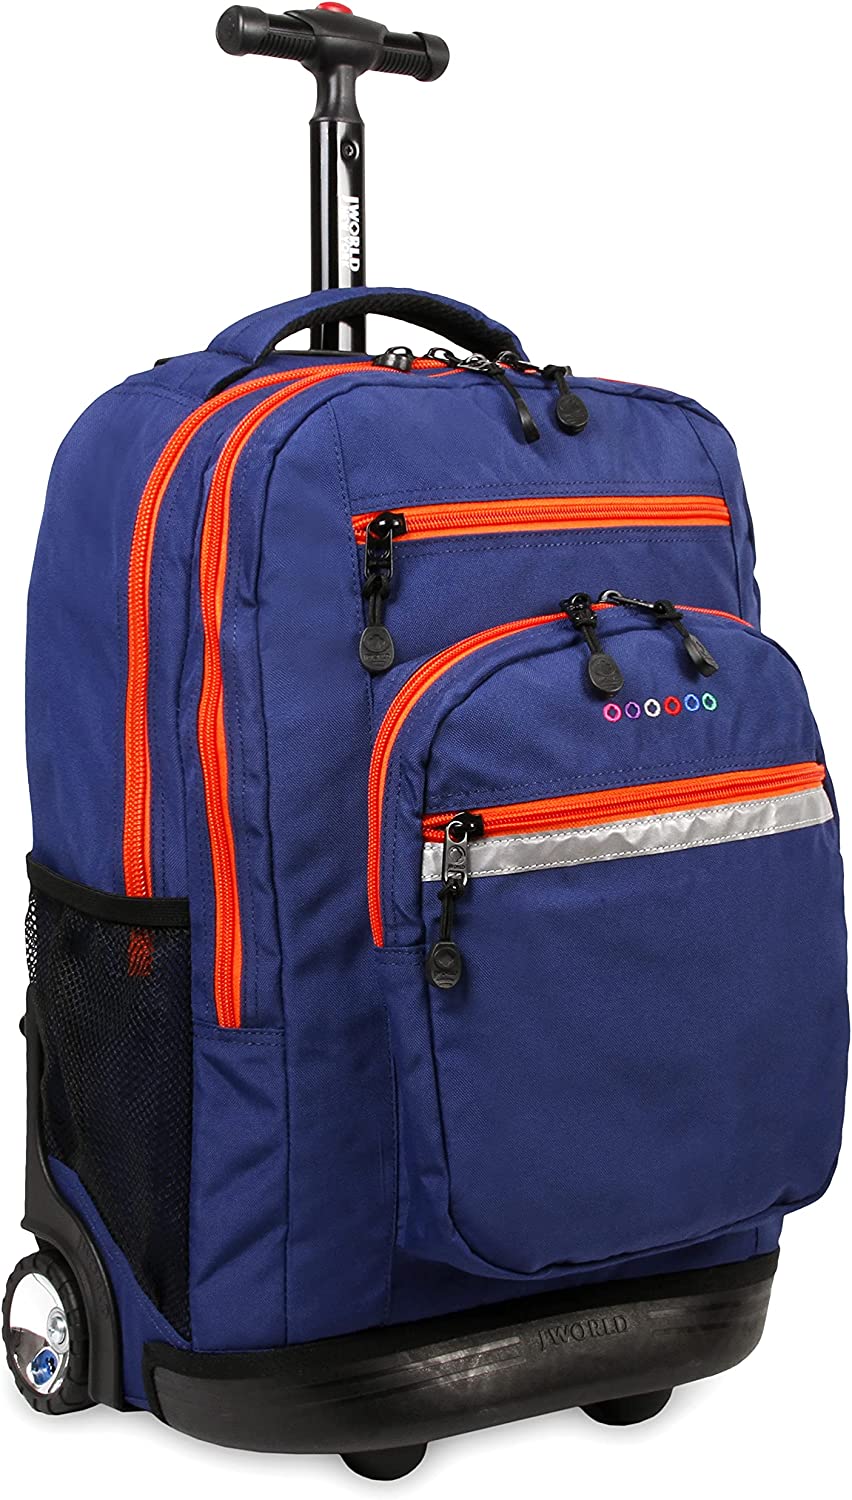 Sundance Rolling Backpack Girl Boy Roller Bookbag, Navy, One Size